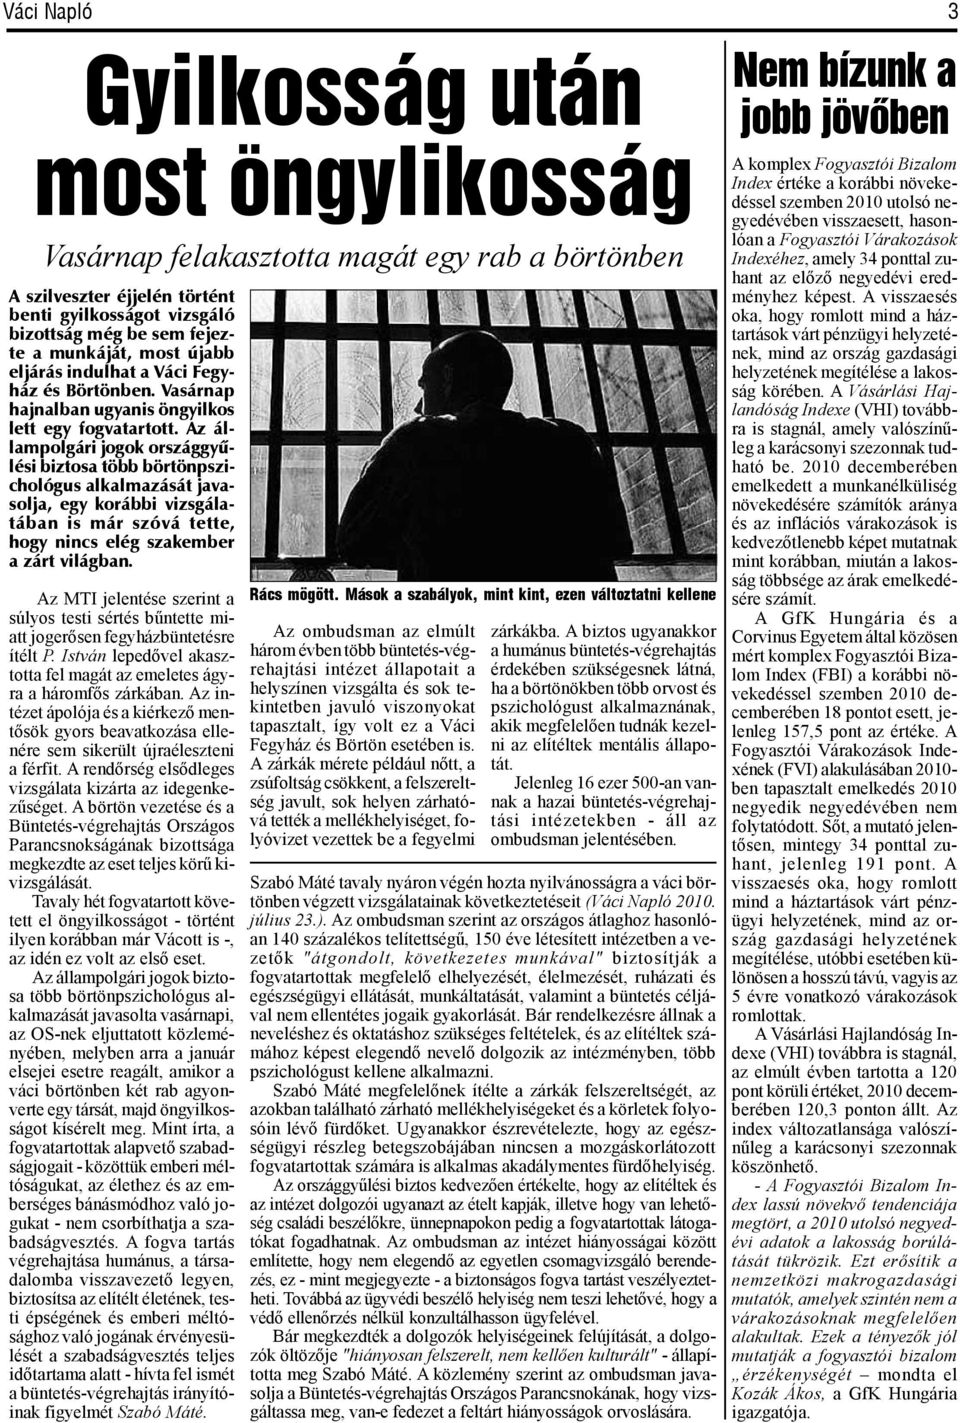 Az állampolgári jogok országgyûlési biztosa több börtönpszichológus alkalmazását javasolja, egy korábbi vizsgálatában is már szóvá tette, hogy nincs elég szakember a zárt világban.